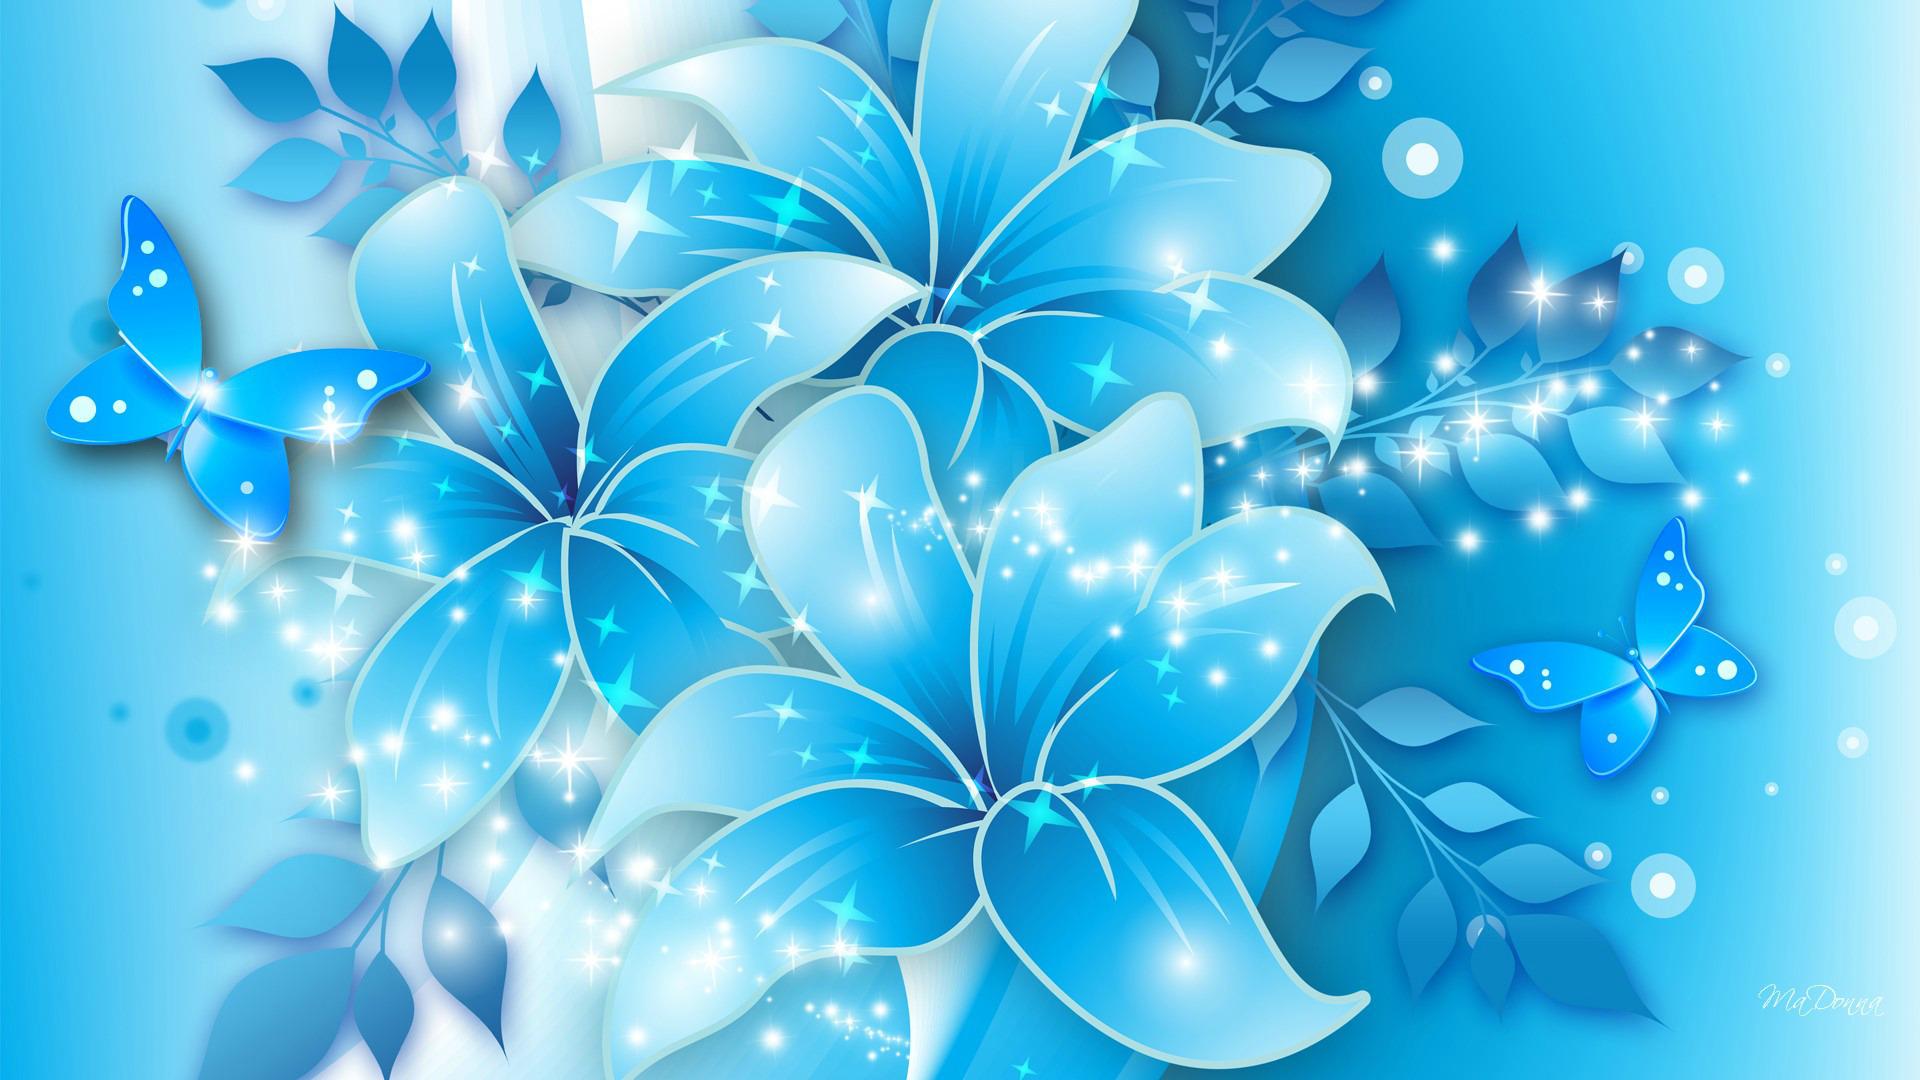 Blue Flower Background Design .teahub.io